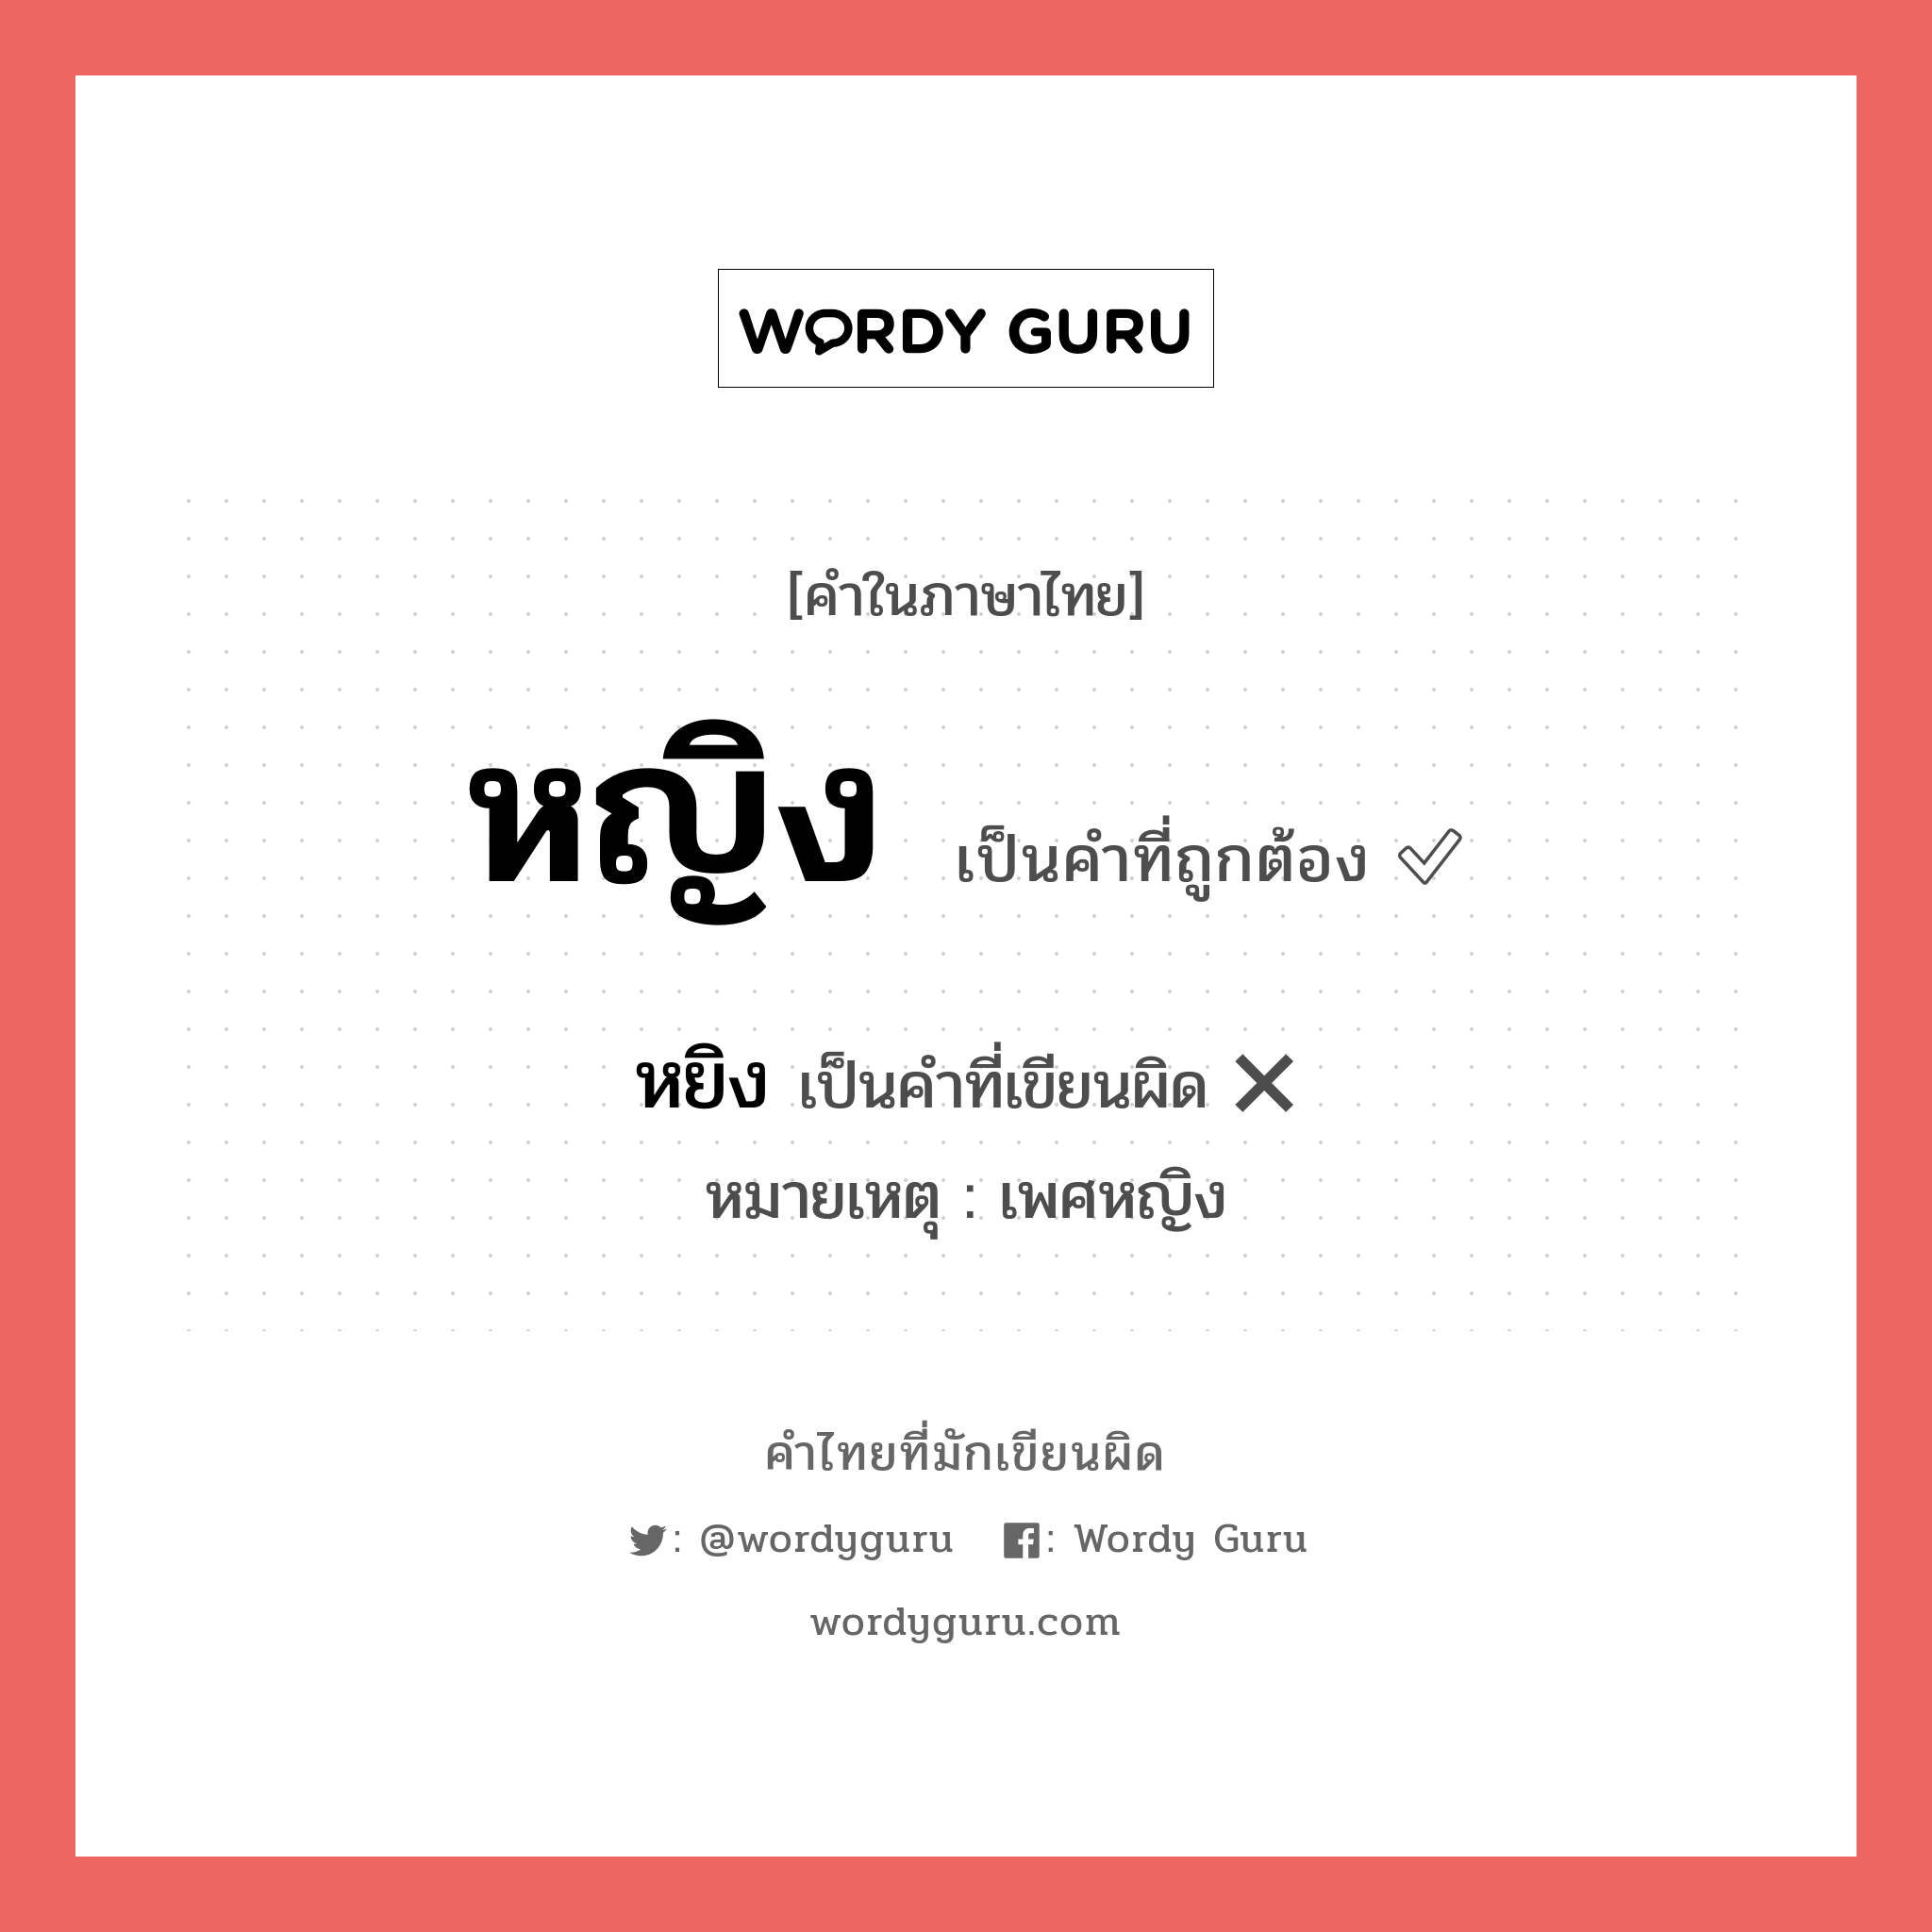 หญิง หรือ หยิง คำไหนเขียนถูก?, คำในภาษาไทยที่มักเขียนผิด หญิง คำที่ผิด ❌ หยิง หมายเหตุ เพศหญิง